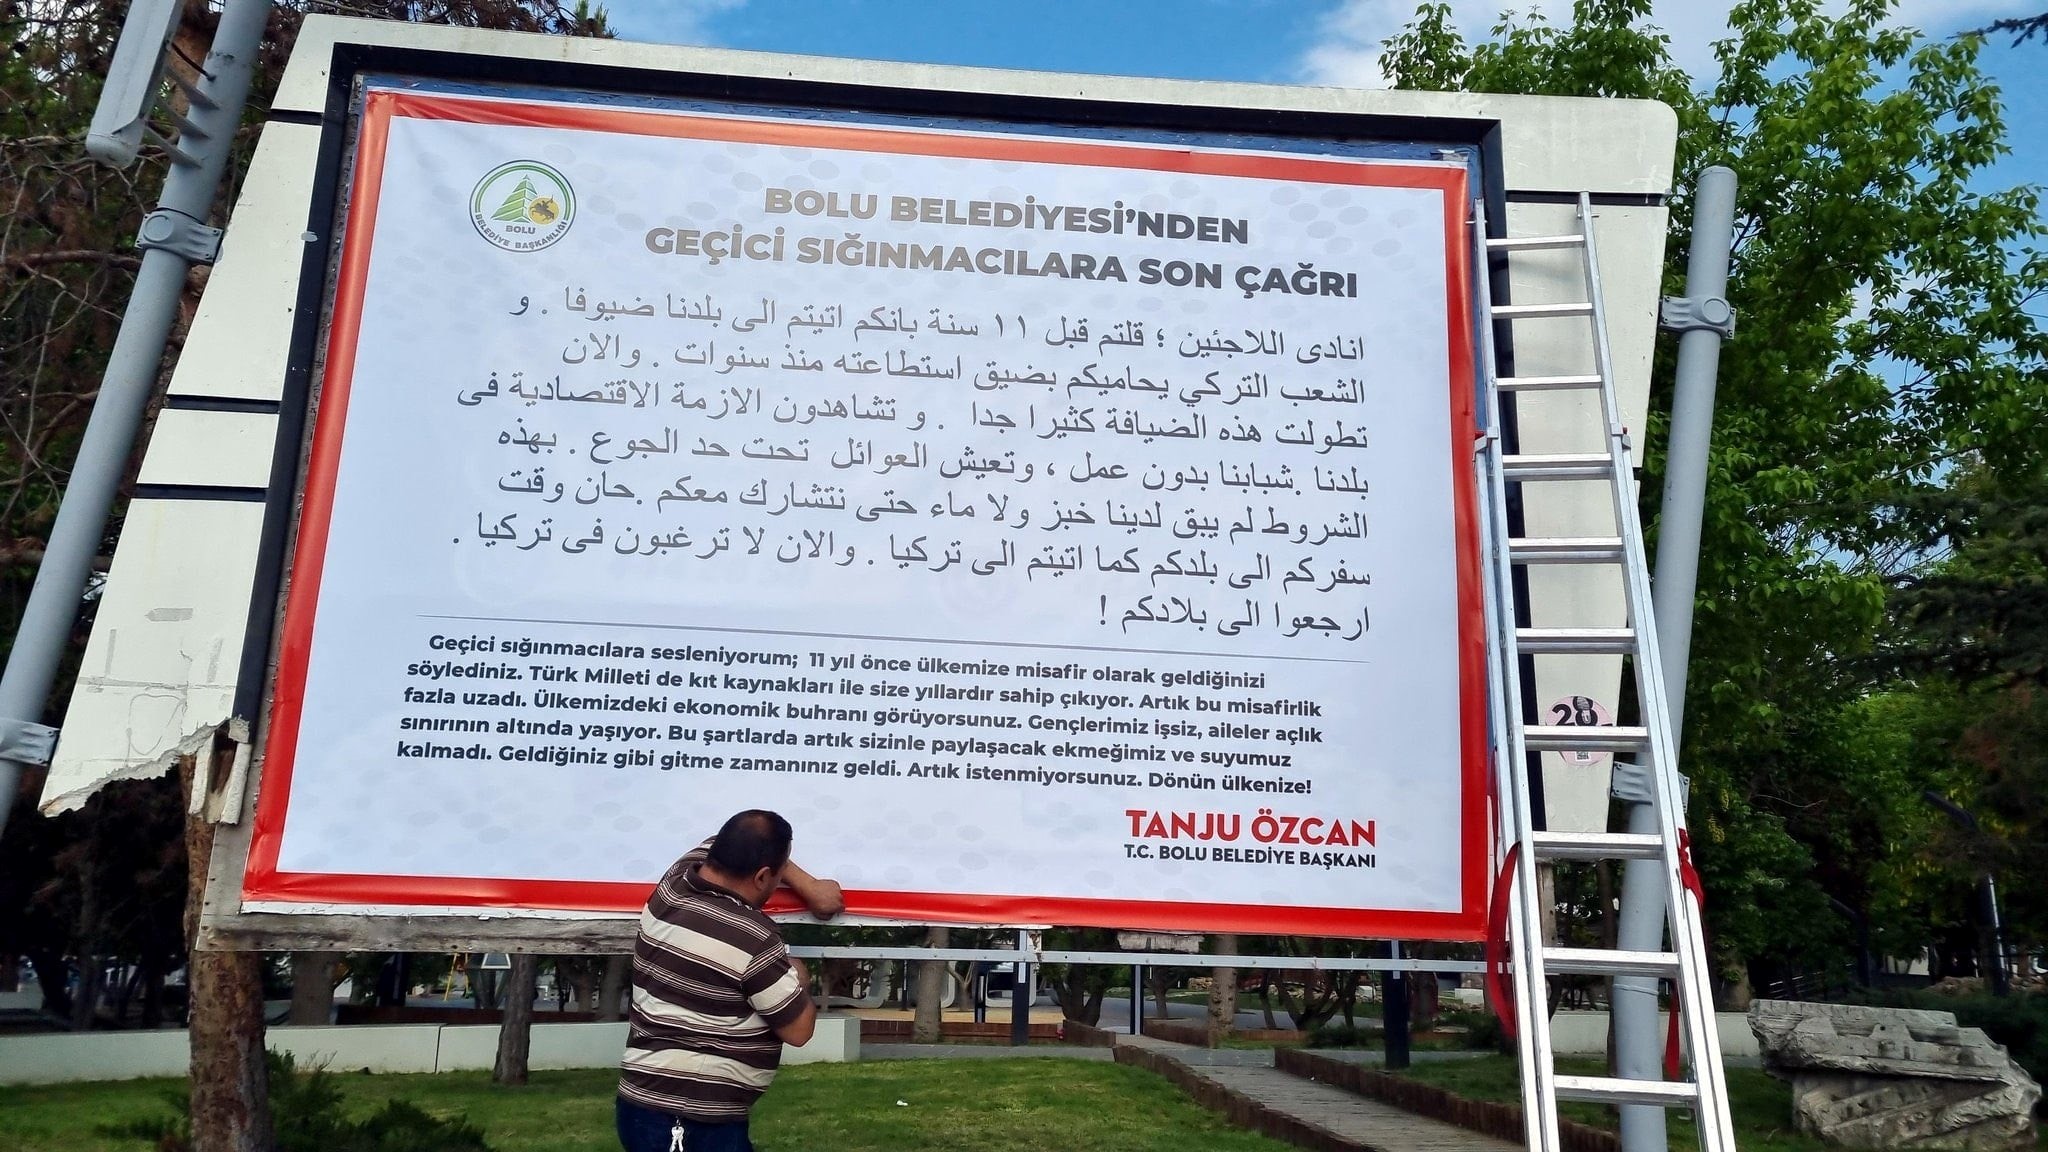 CHP-Bürgermeister Tanju Ozcans fremdenfeindliches Plakat in der Provinz Bolu im Nordwesten der Türkei (Quelle: Facebook, Haber Ay)